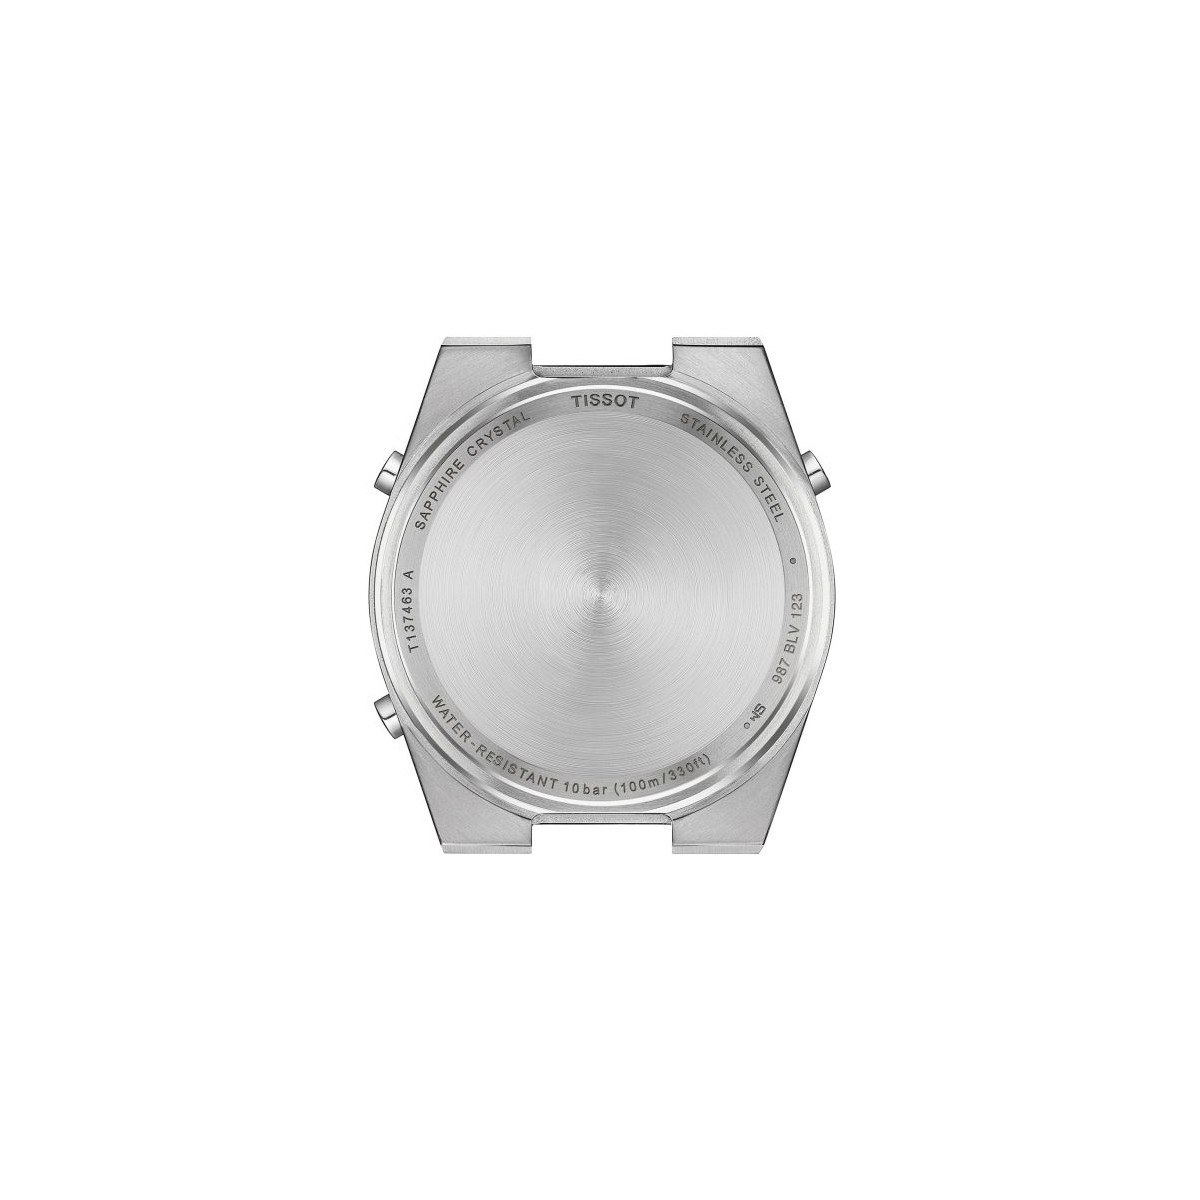 Reloj Tissot PRX Digital 40mm